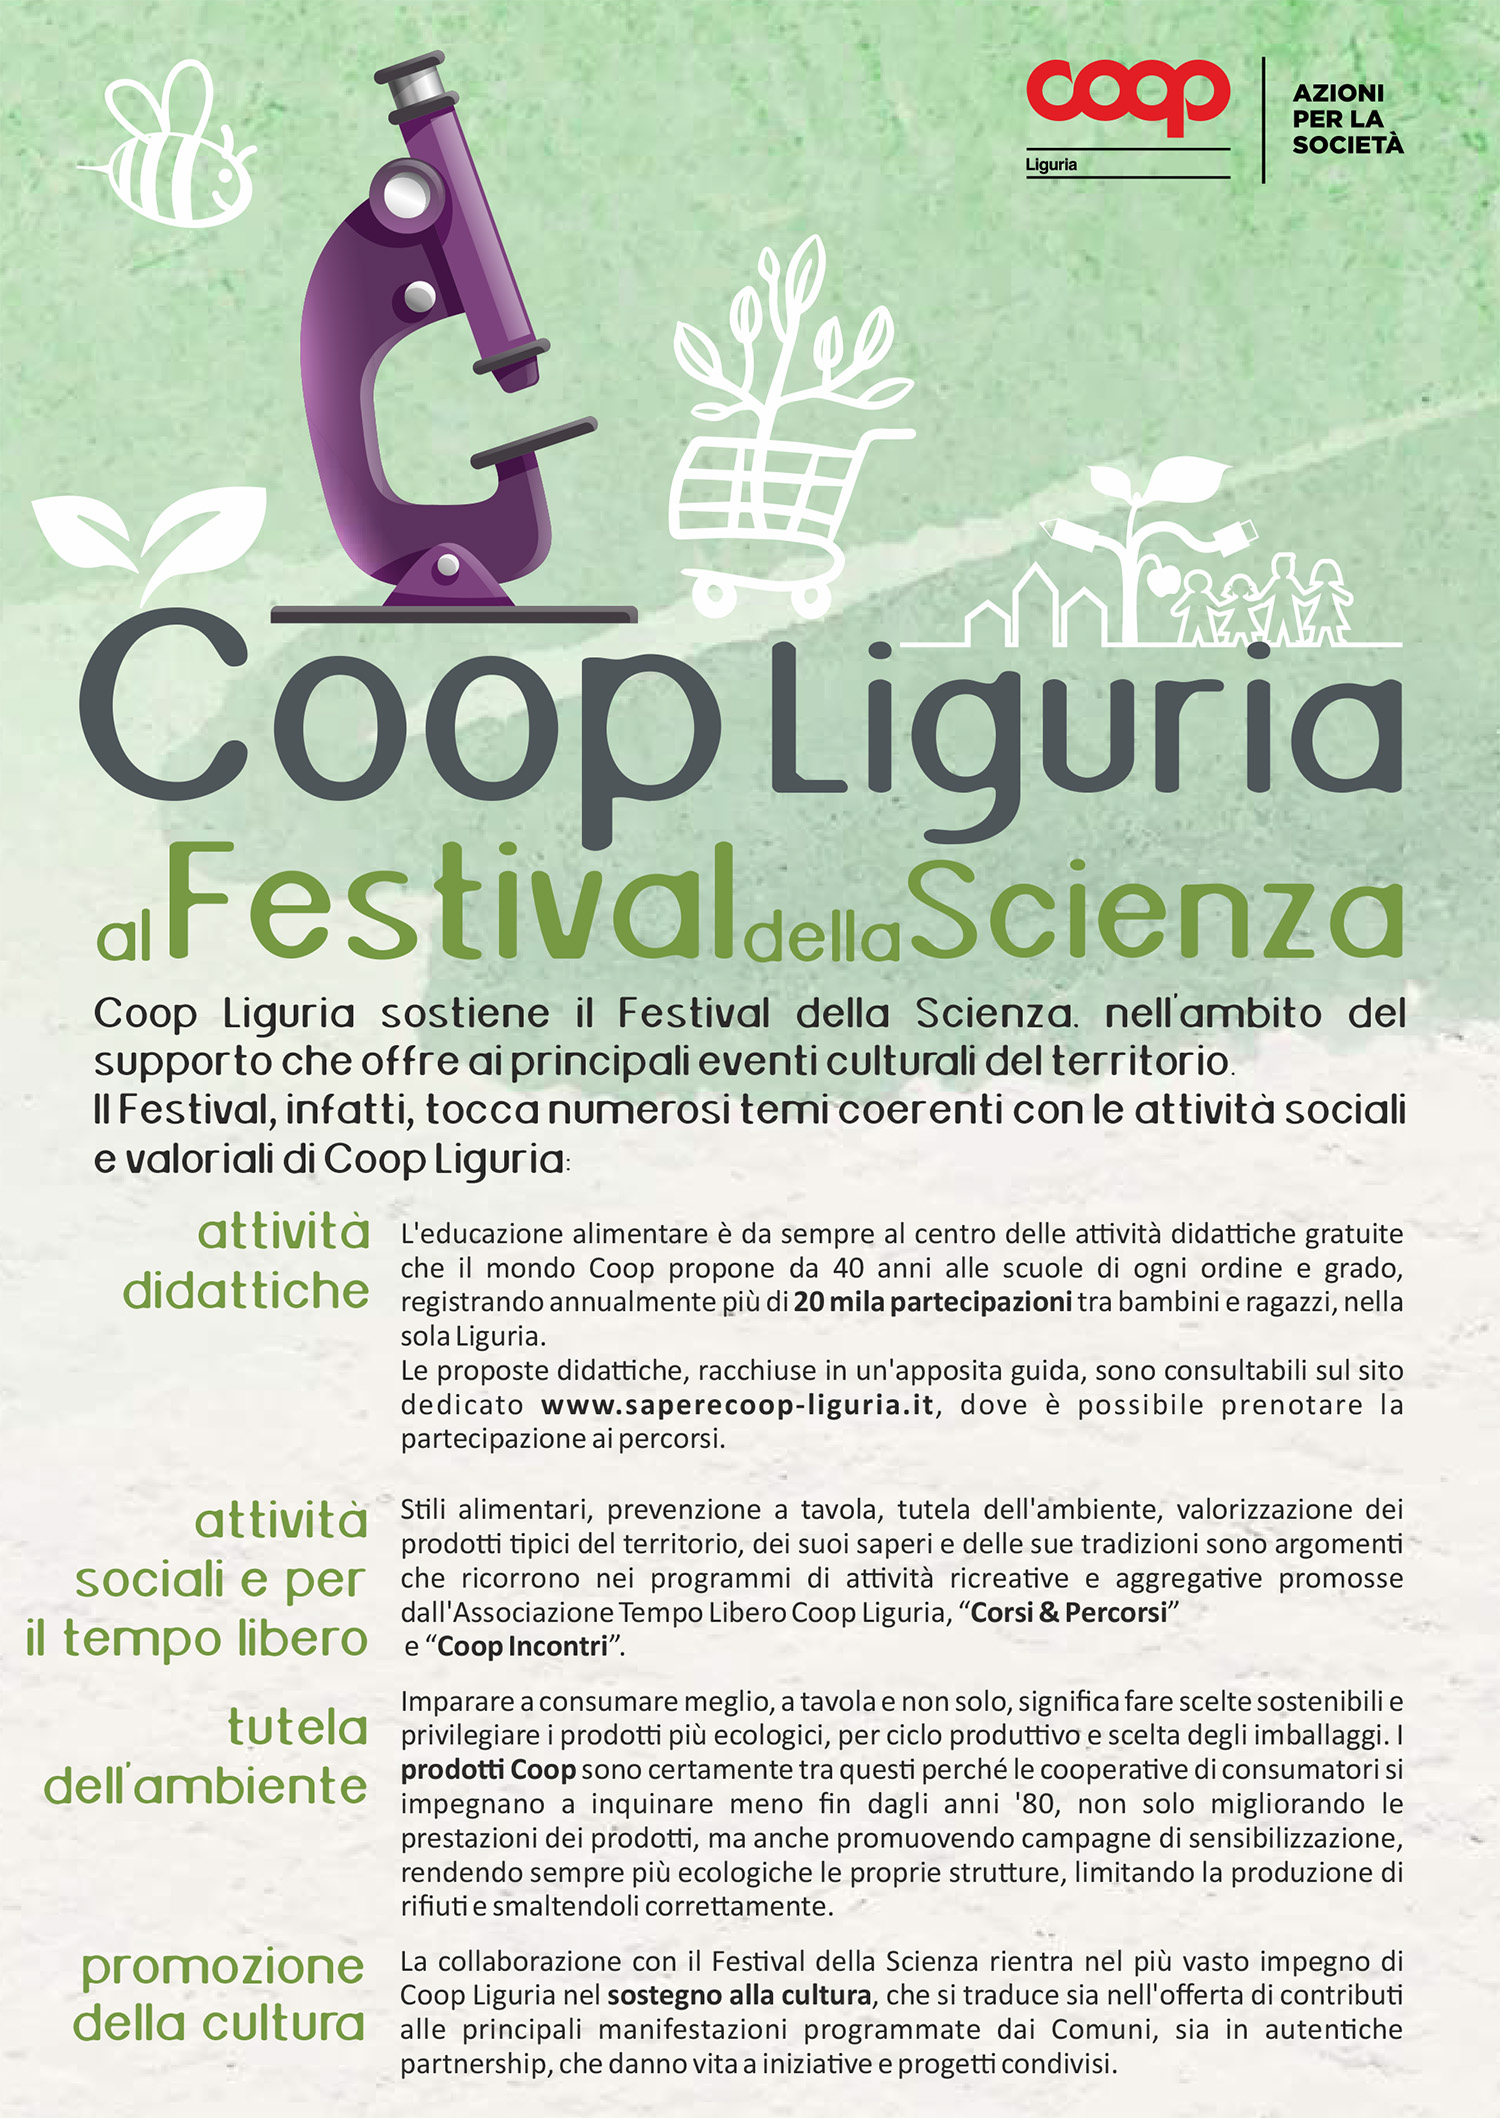 Volantino programma di Coop Liguria Festival della scienza 2022